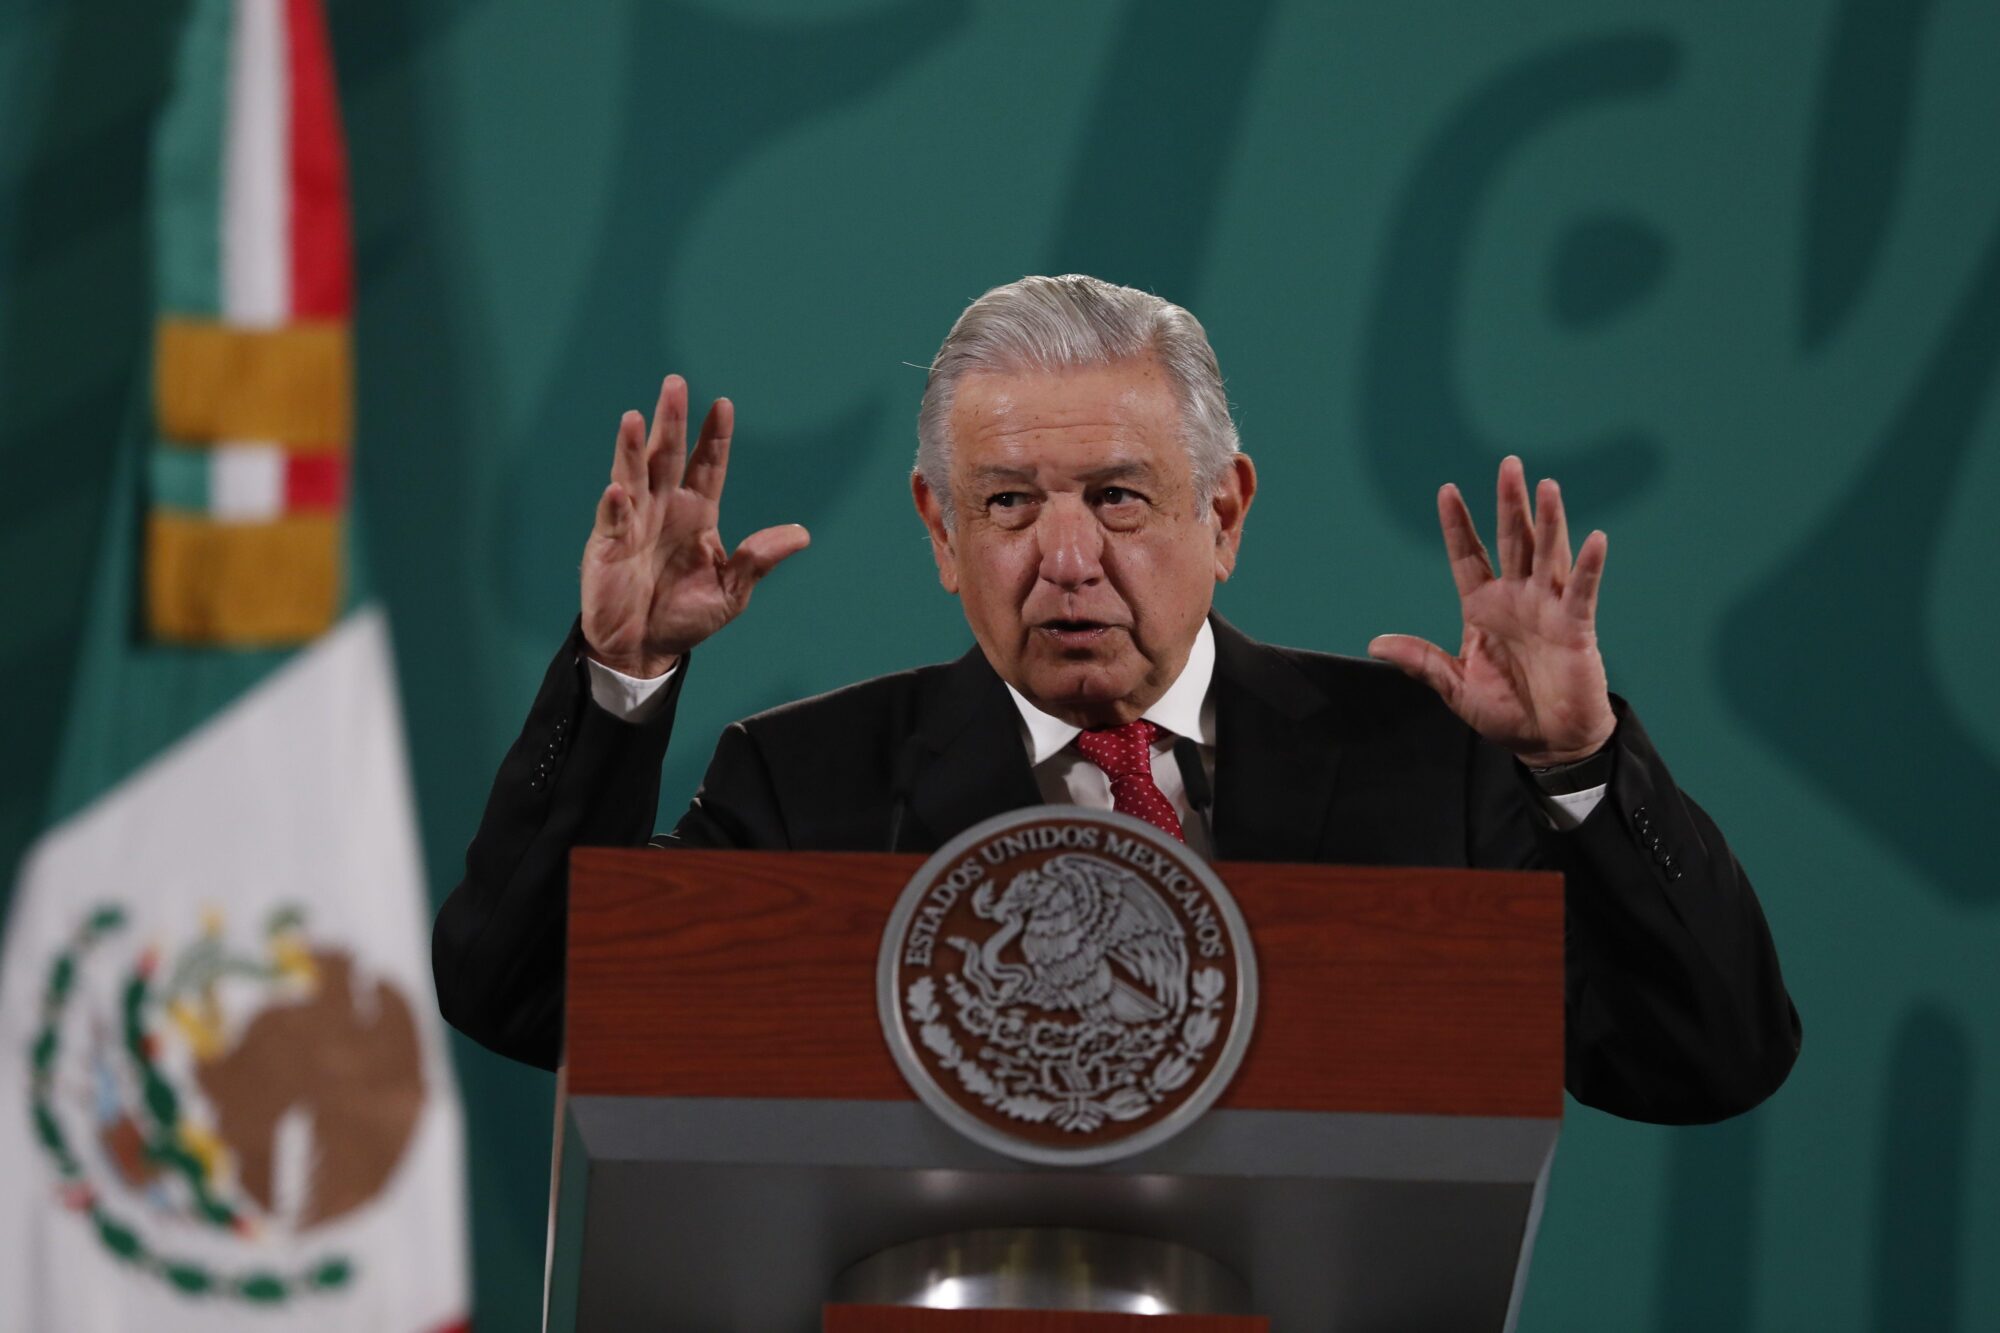 O presidente do México, Andrés Manuel López Obrador, fala em uma palestra.